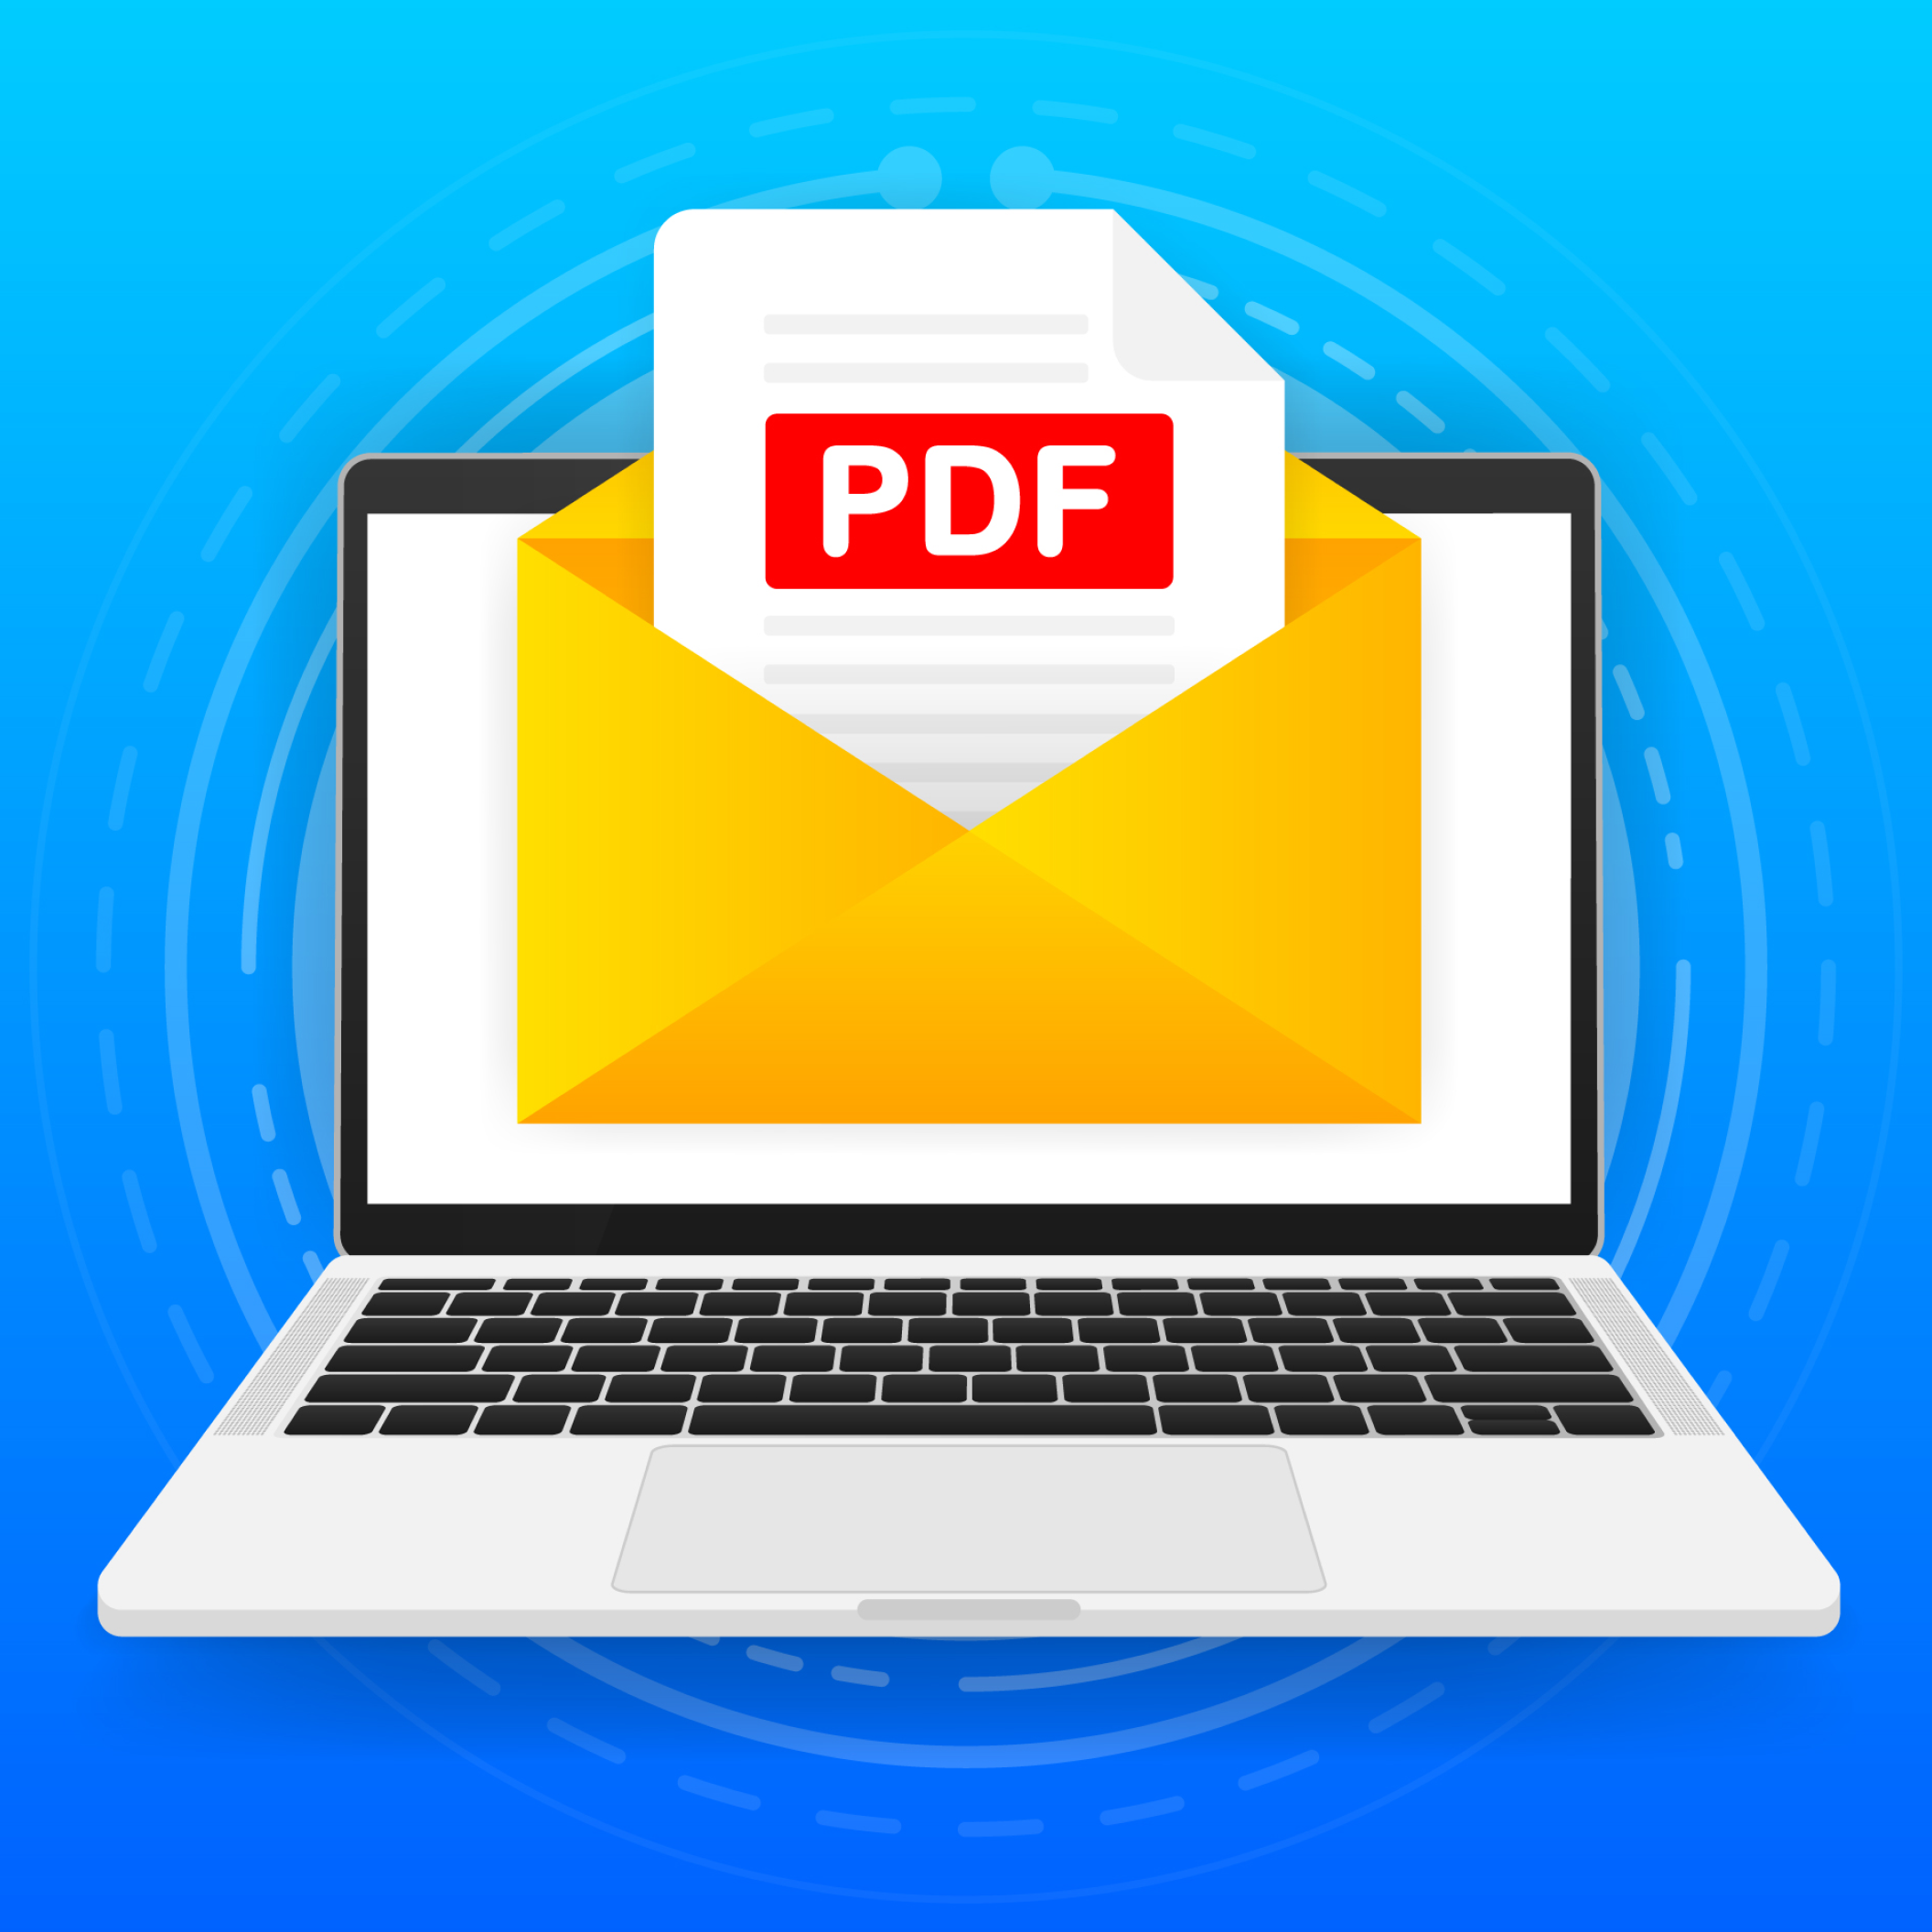 22-04-Gestire le email e la generazione di documenti con funzionalità componibili quadrata.png